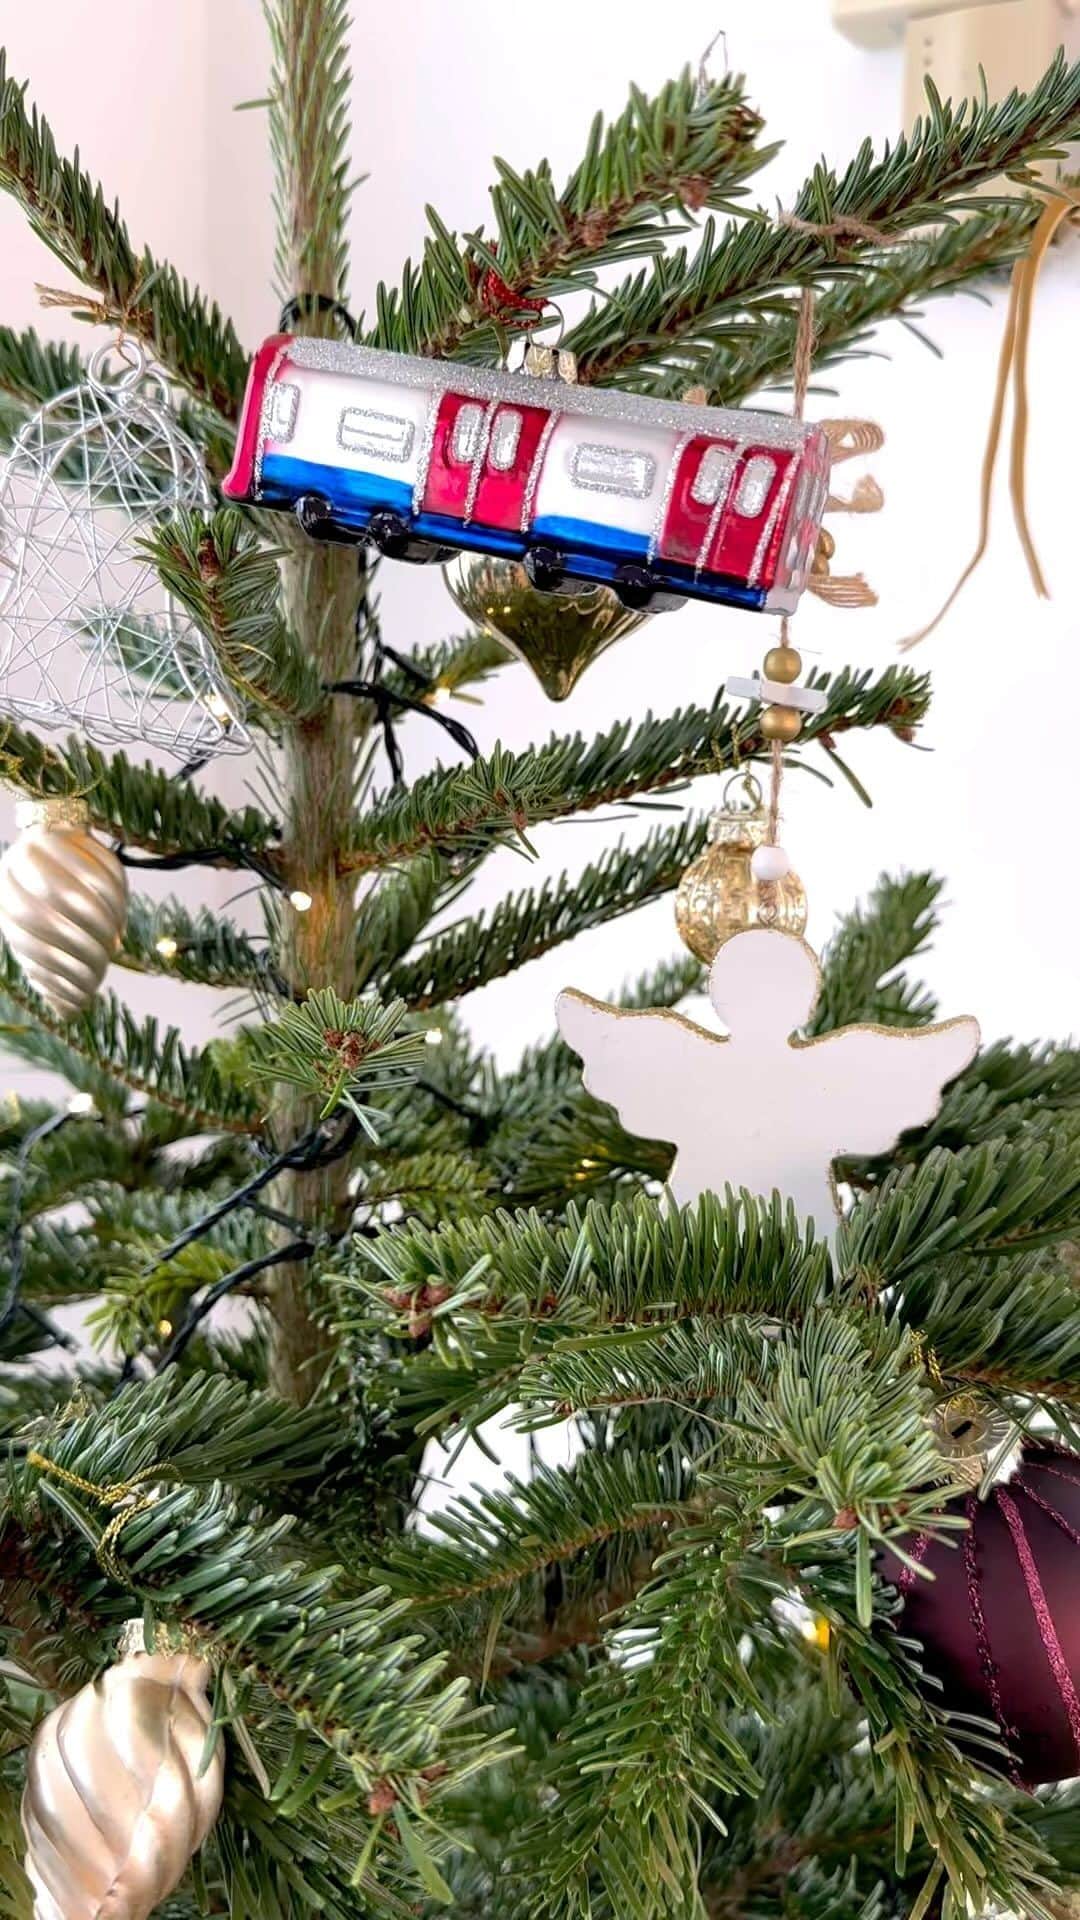 永田杏奈のインスタグラム：「・ 息子が産まれてから初のクリスマスツリーはリアルモミの木にしました🎄 オンラインでオーダーする時に、150~180㎝の大きさにしたんだけどその差の30㎝は個体差かなと思っていたら、先端だけの長さで30㎝だった😂 という訳で予想していたより小さめモミの木だったけど、これも良い勉強ということで。  息子はツリーの飾り付けを楽しみにしていたので、張り切って手伝ってくれました。 イタズラ盛り、ツリーを倒されたり色々いたずらするかと思ったけどたまに触る程度でクリスマスツリーを眺めて喜んでくれているので飾って良かった🤍  #クリスマスツリー #クリスマスツリーデコレーション #モミの木  #christmastree #chsistmastreedecoration」